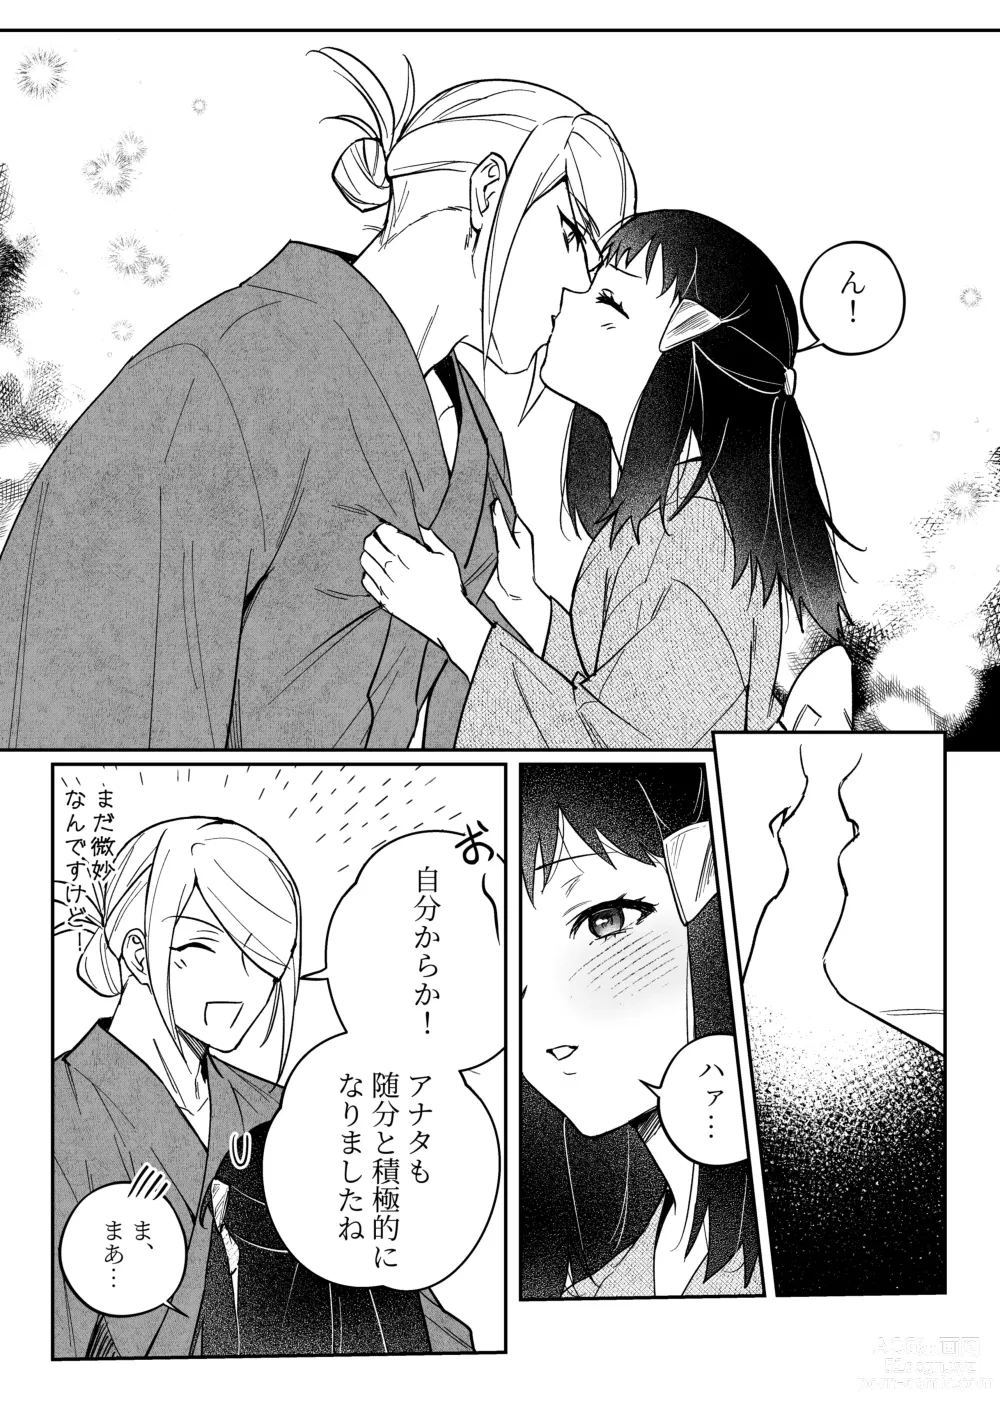 Page 2 of doujinshi Chikubi Karakau Volo Shou Manga